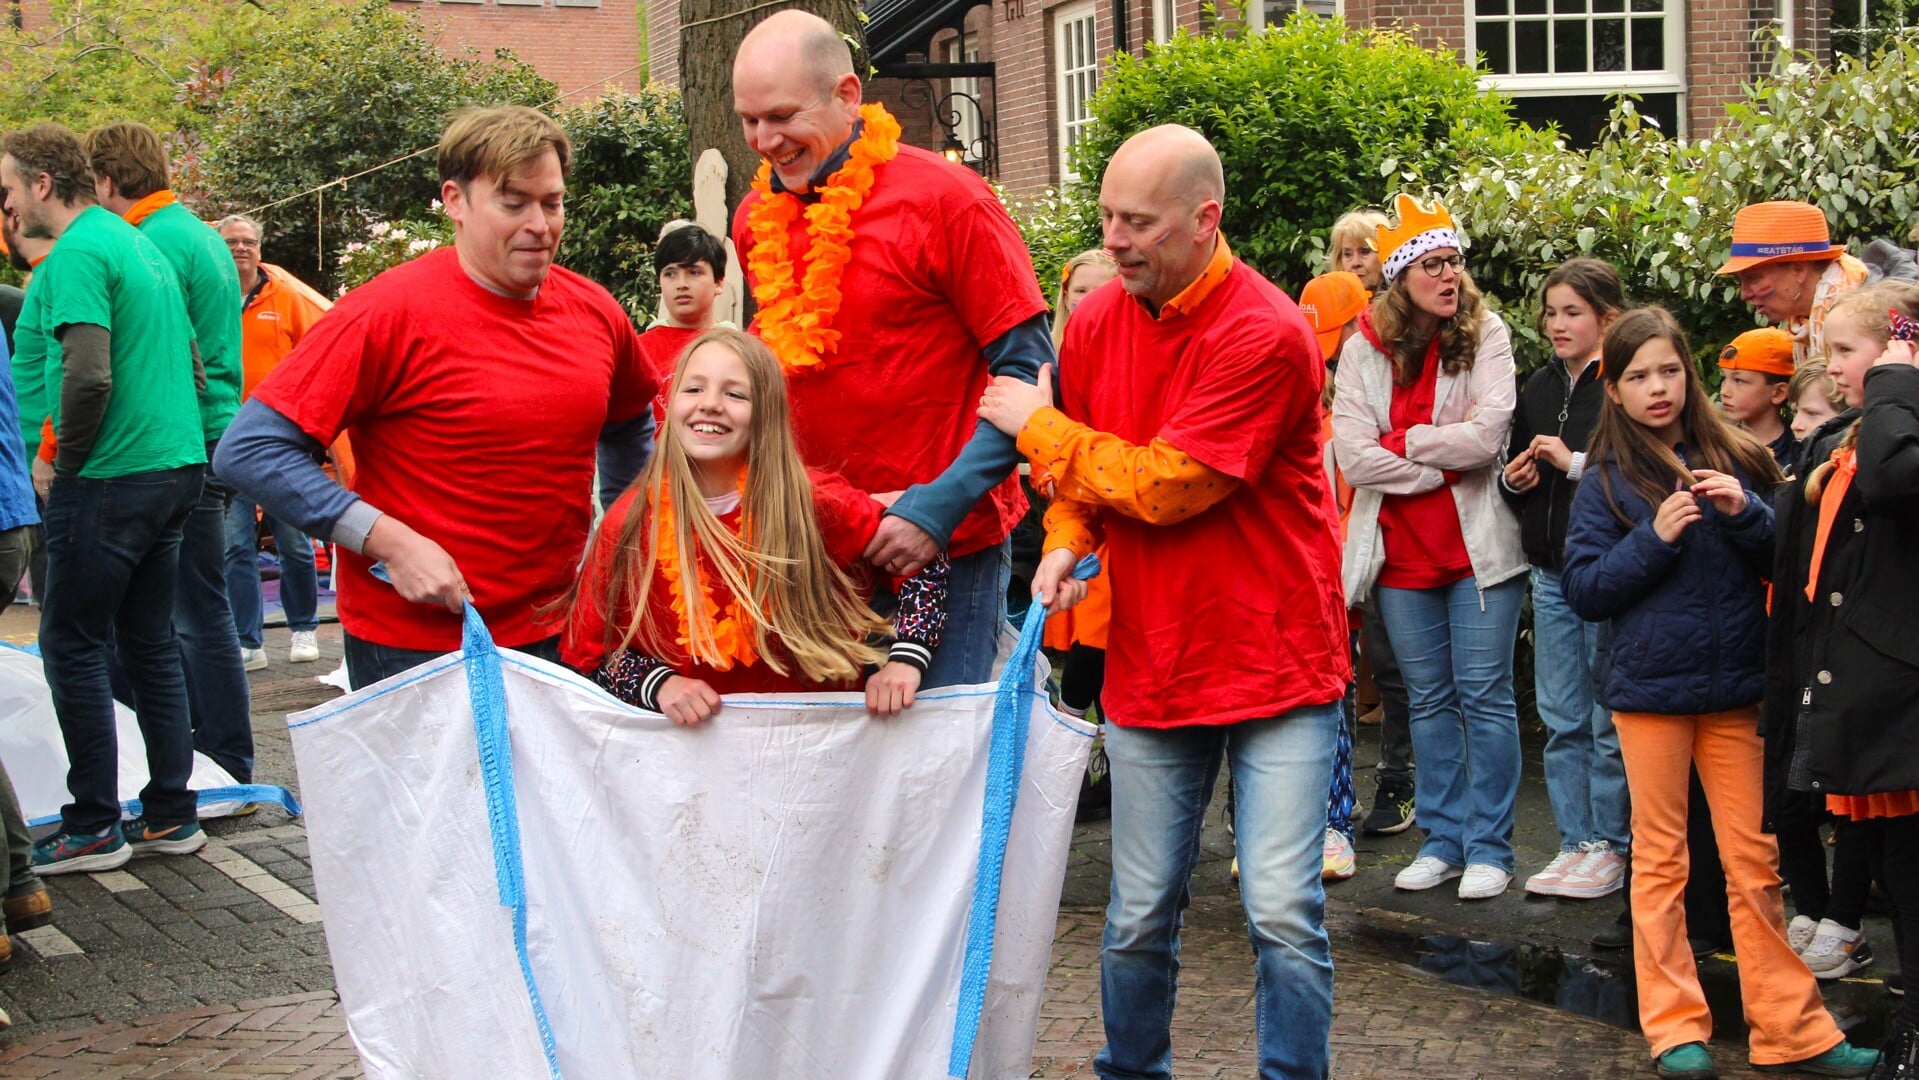 Lauren en drie grote, sterke mannen tijdens de mega zakloopwedstrijd in Leeuwendaal.